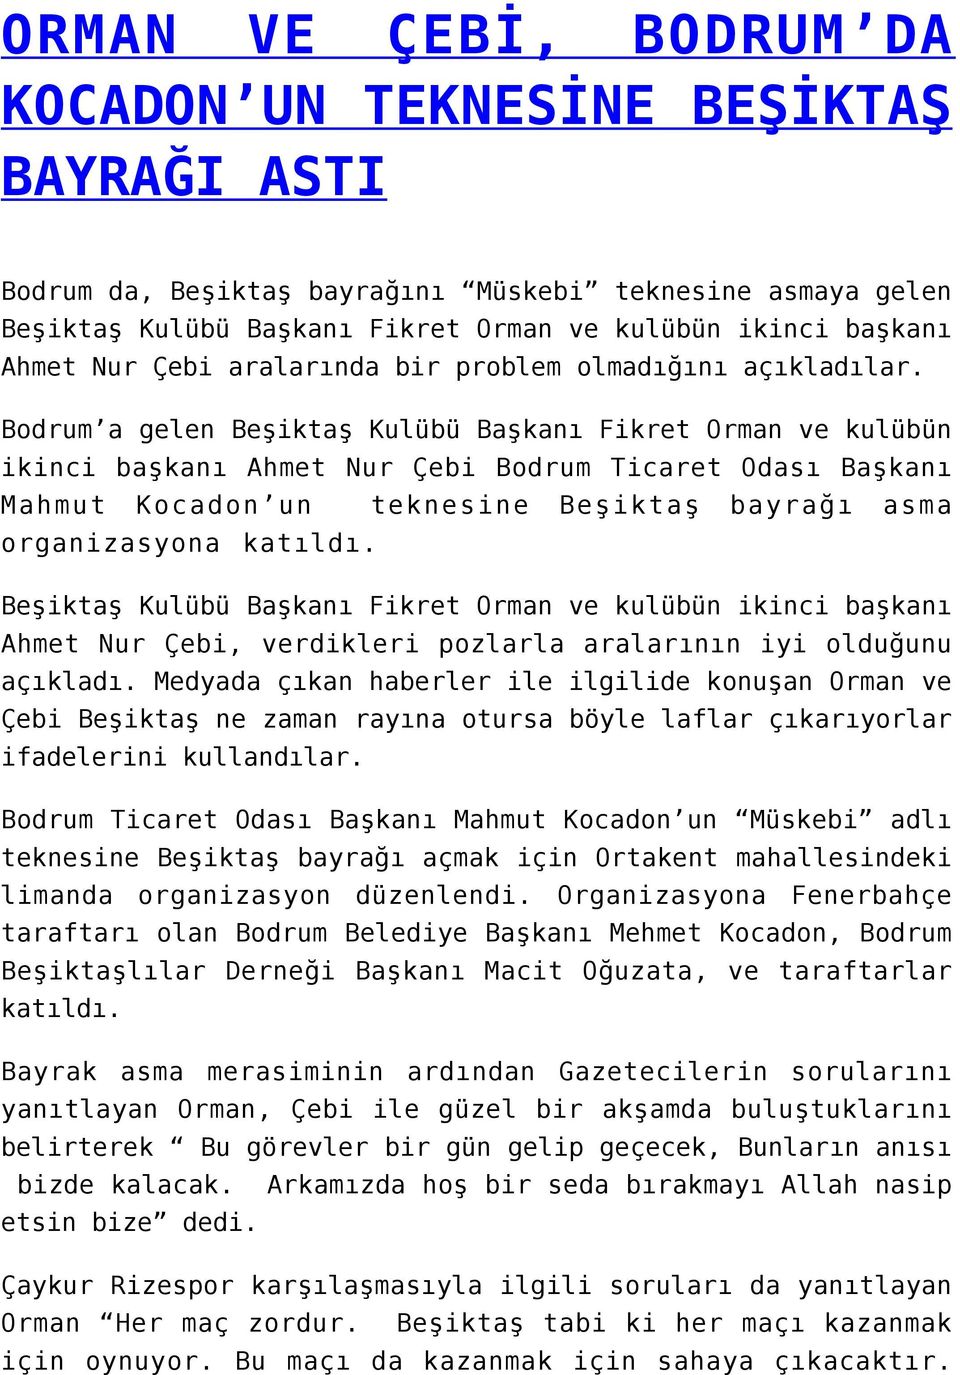 Bodrum a gelen Beşiktaş Kulübü Başkanı Fikret Orman ve kulübün ikinci başkanı Ahmet Nur Çebi Bodrum Ticaret Odası Başkanı Mahmut Kocadon un teknesine Beşiktaş bayrağı asma organizasyona katıldı.